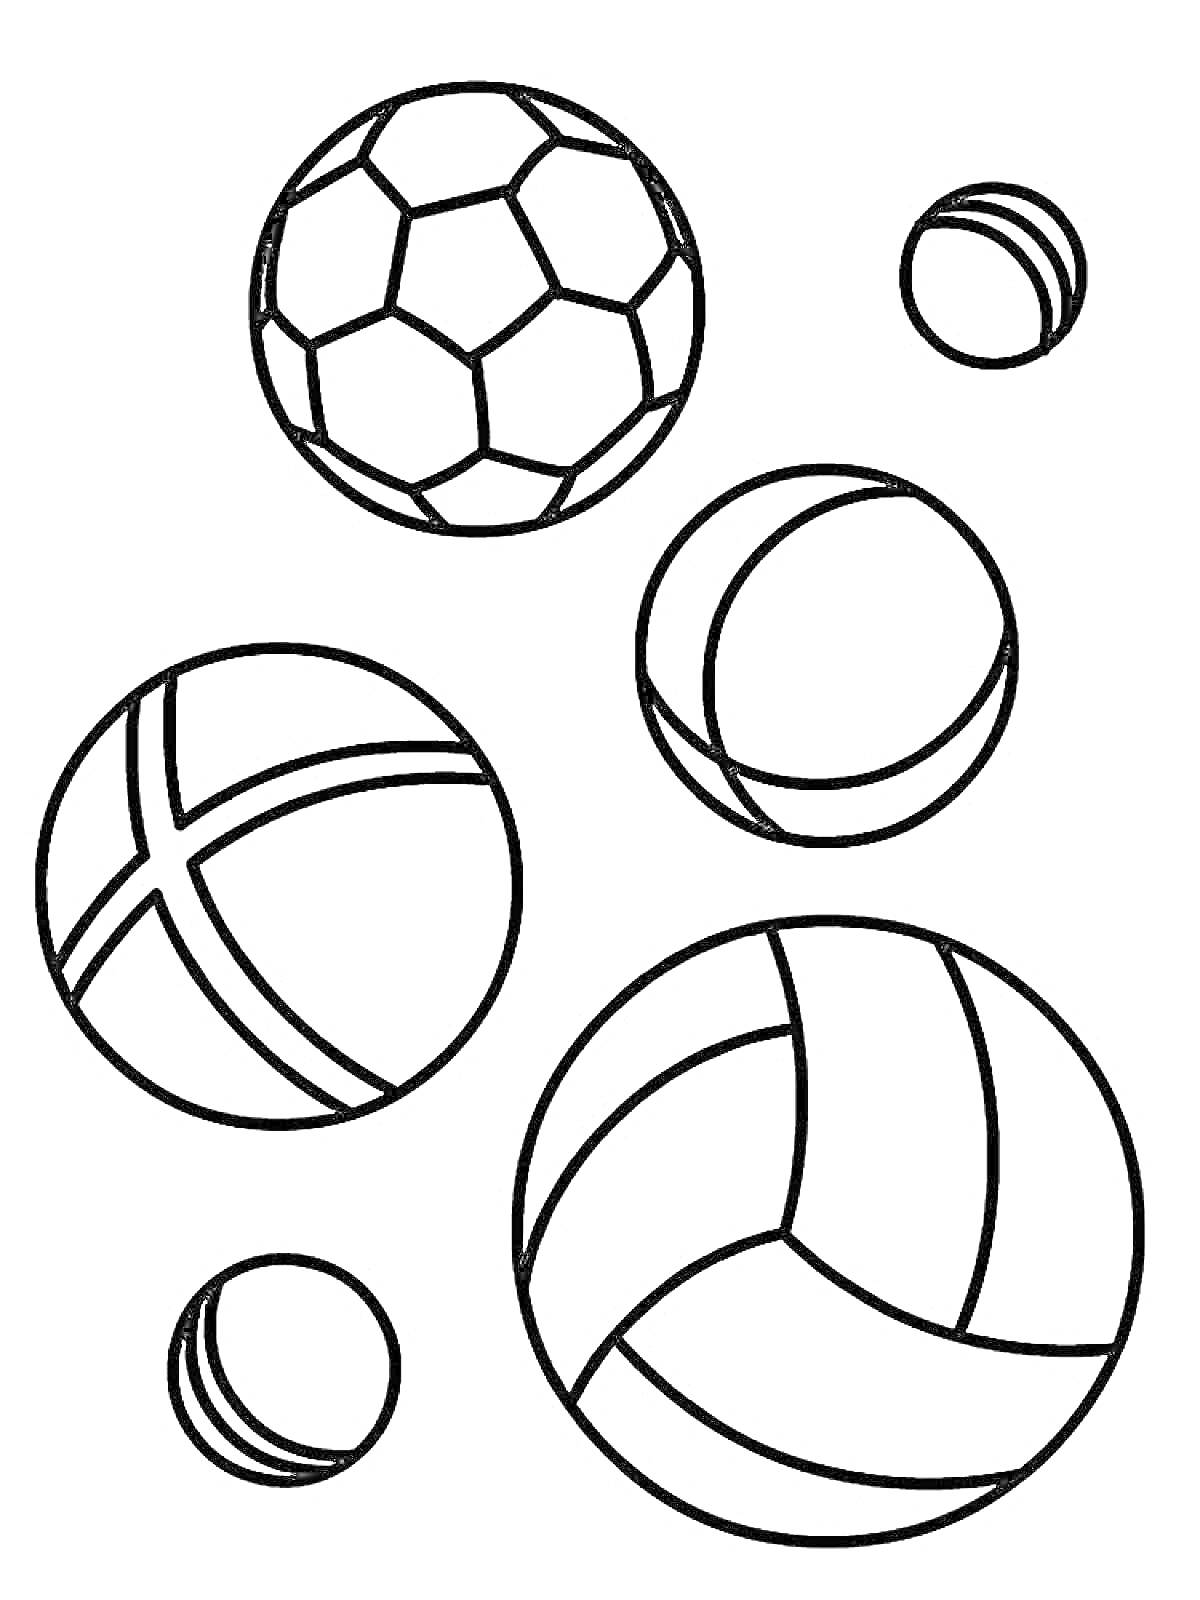 Раскраска с футбольным мячом, теннисными мячами, баскетбольным мячом и волейбольным мячом